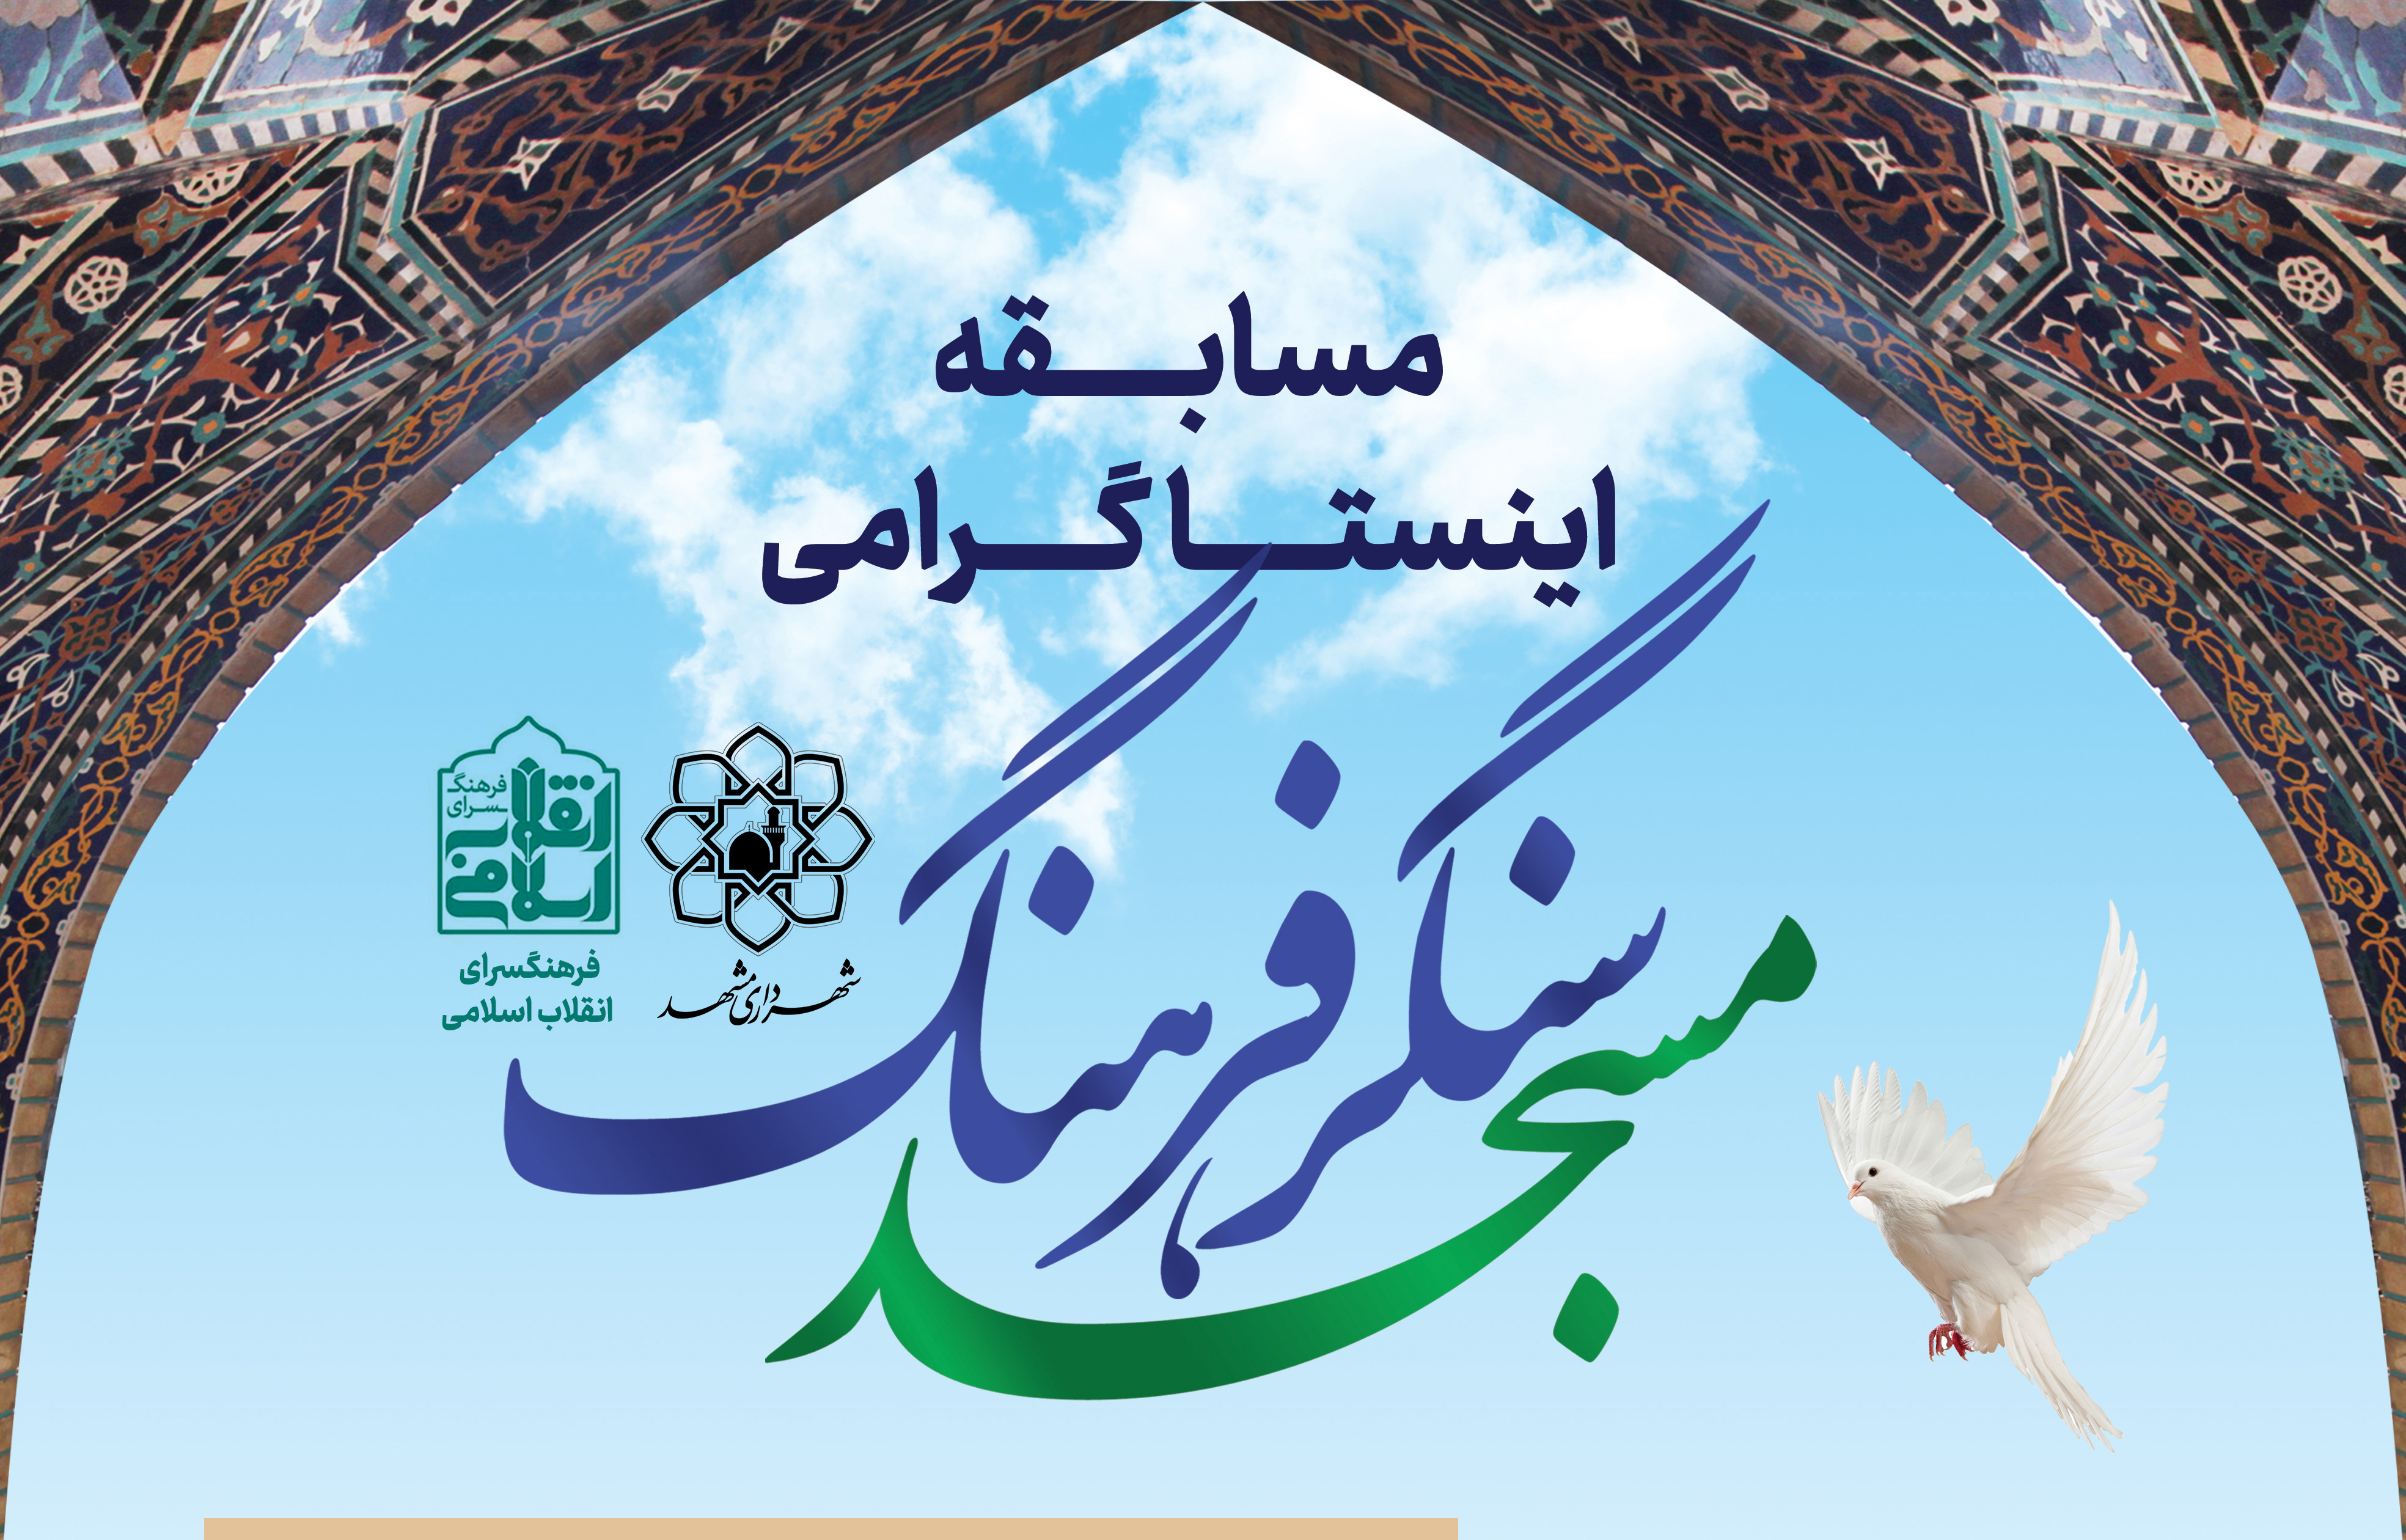 مسابقه «مسجد سنگر فرهنگ» در مشهد برگزار می شود